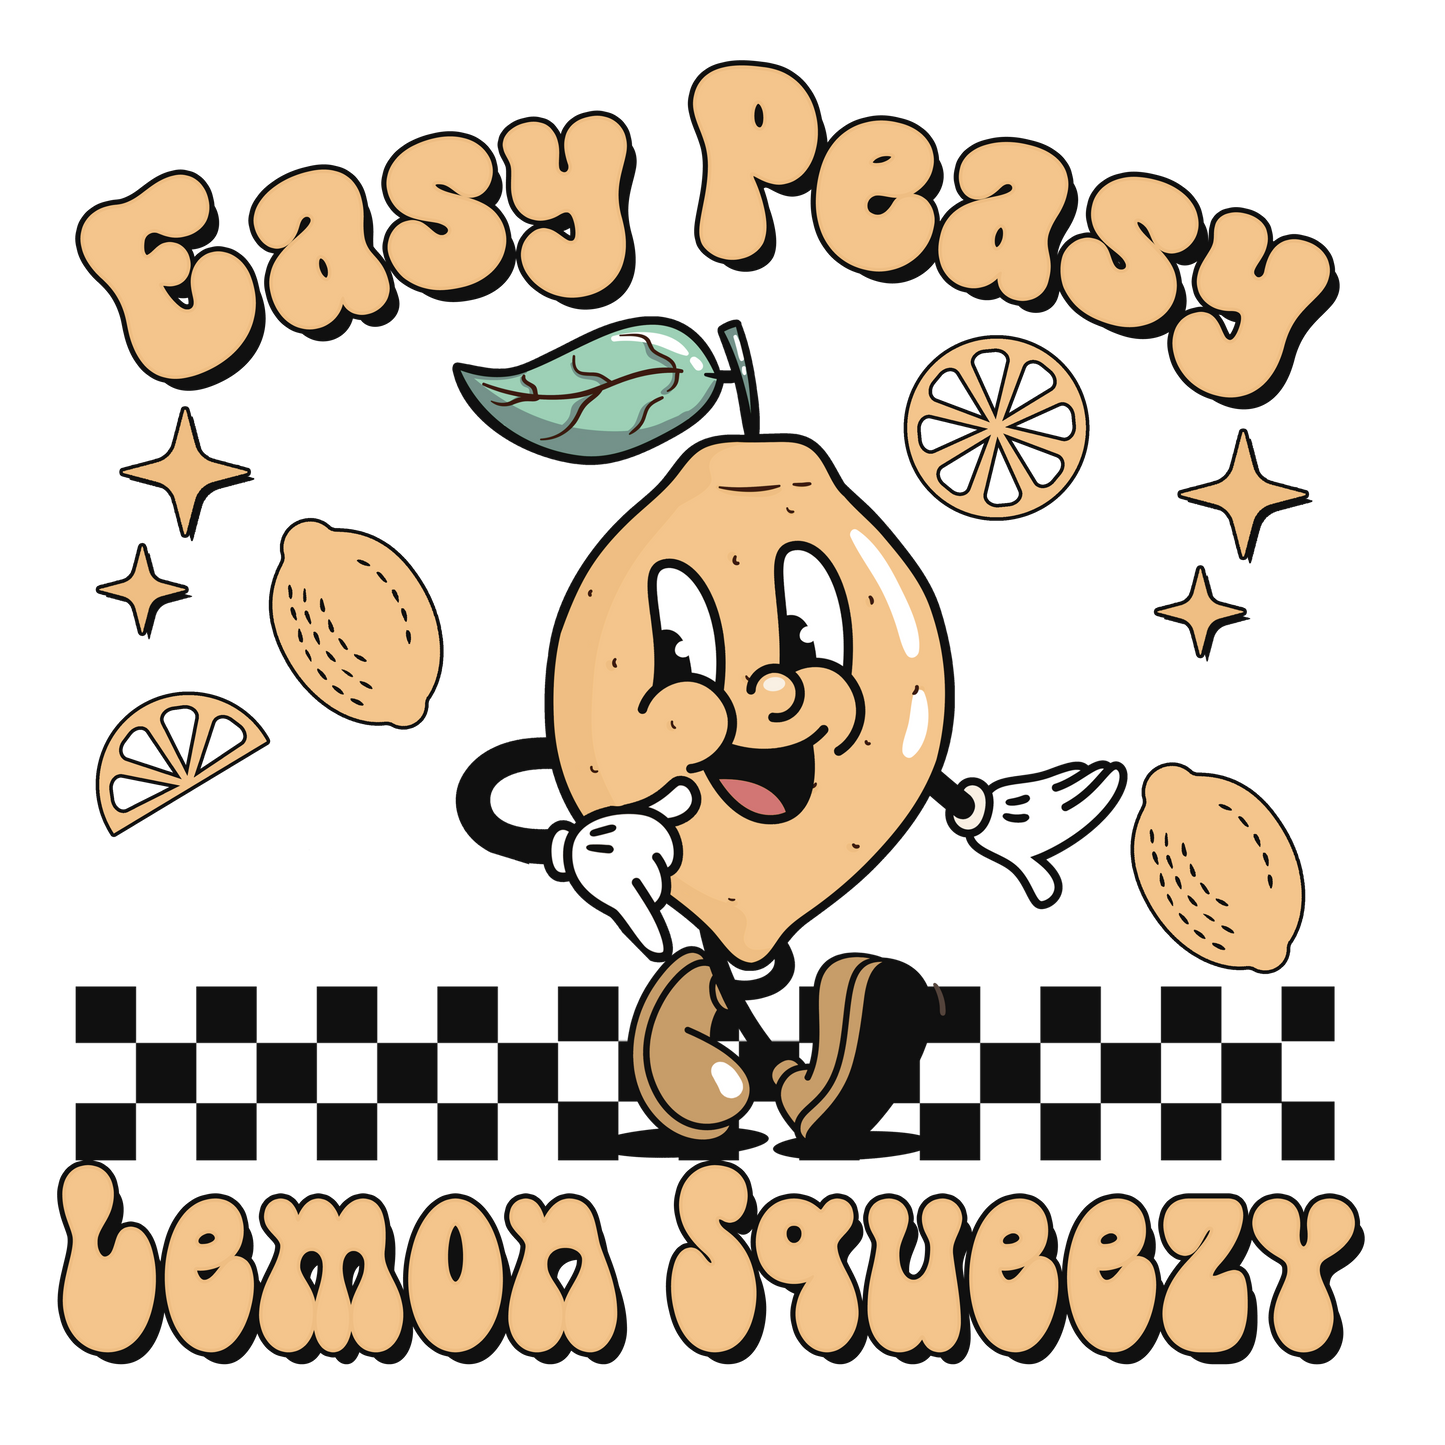 Easy Peasy Lemon Squeezy Logo